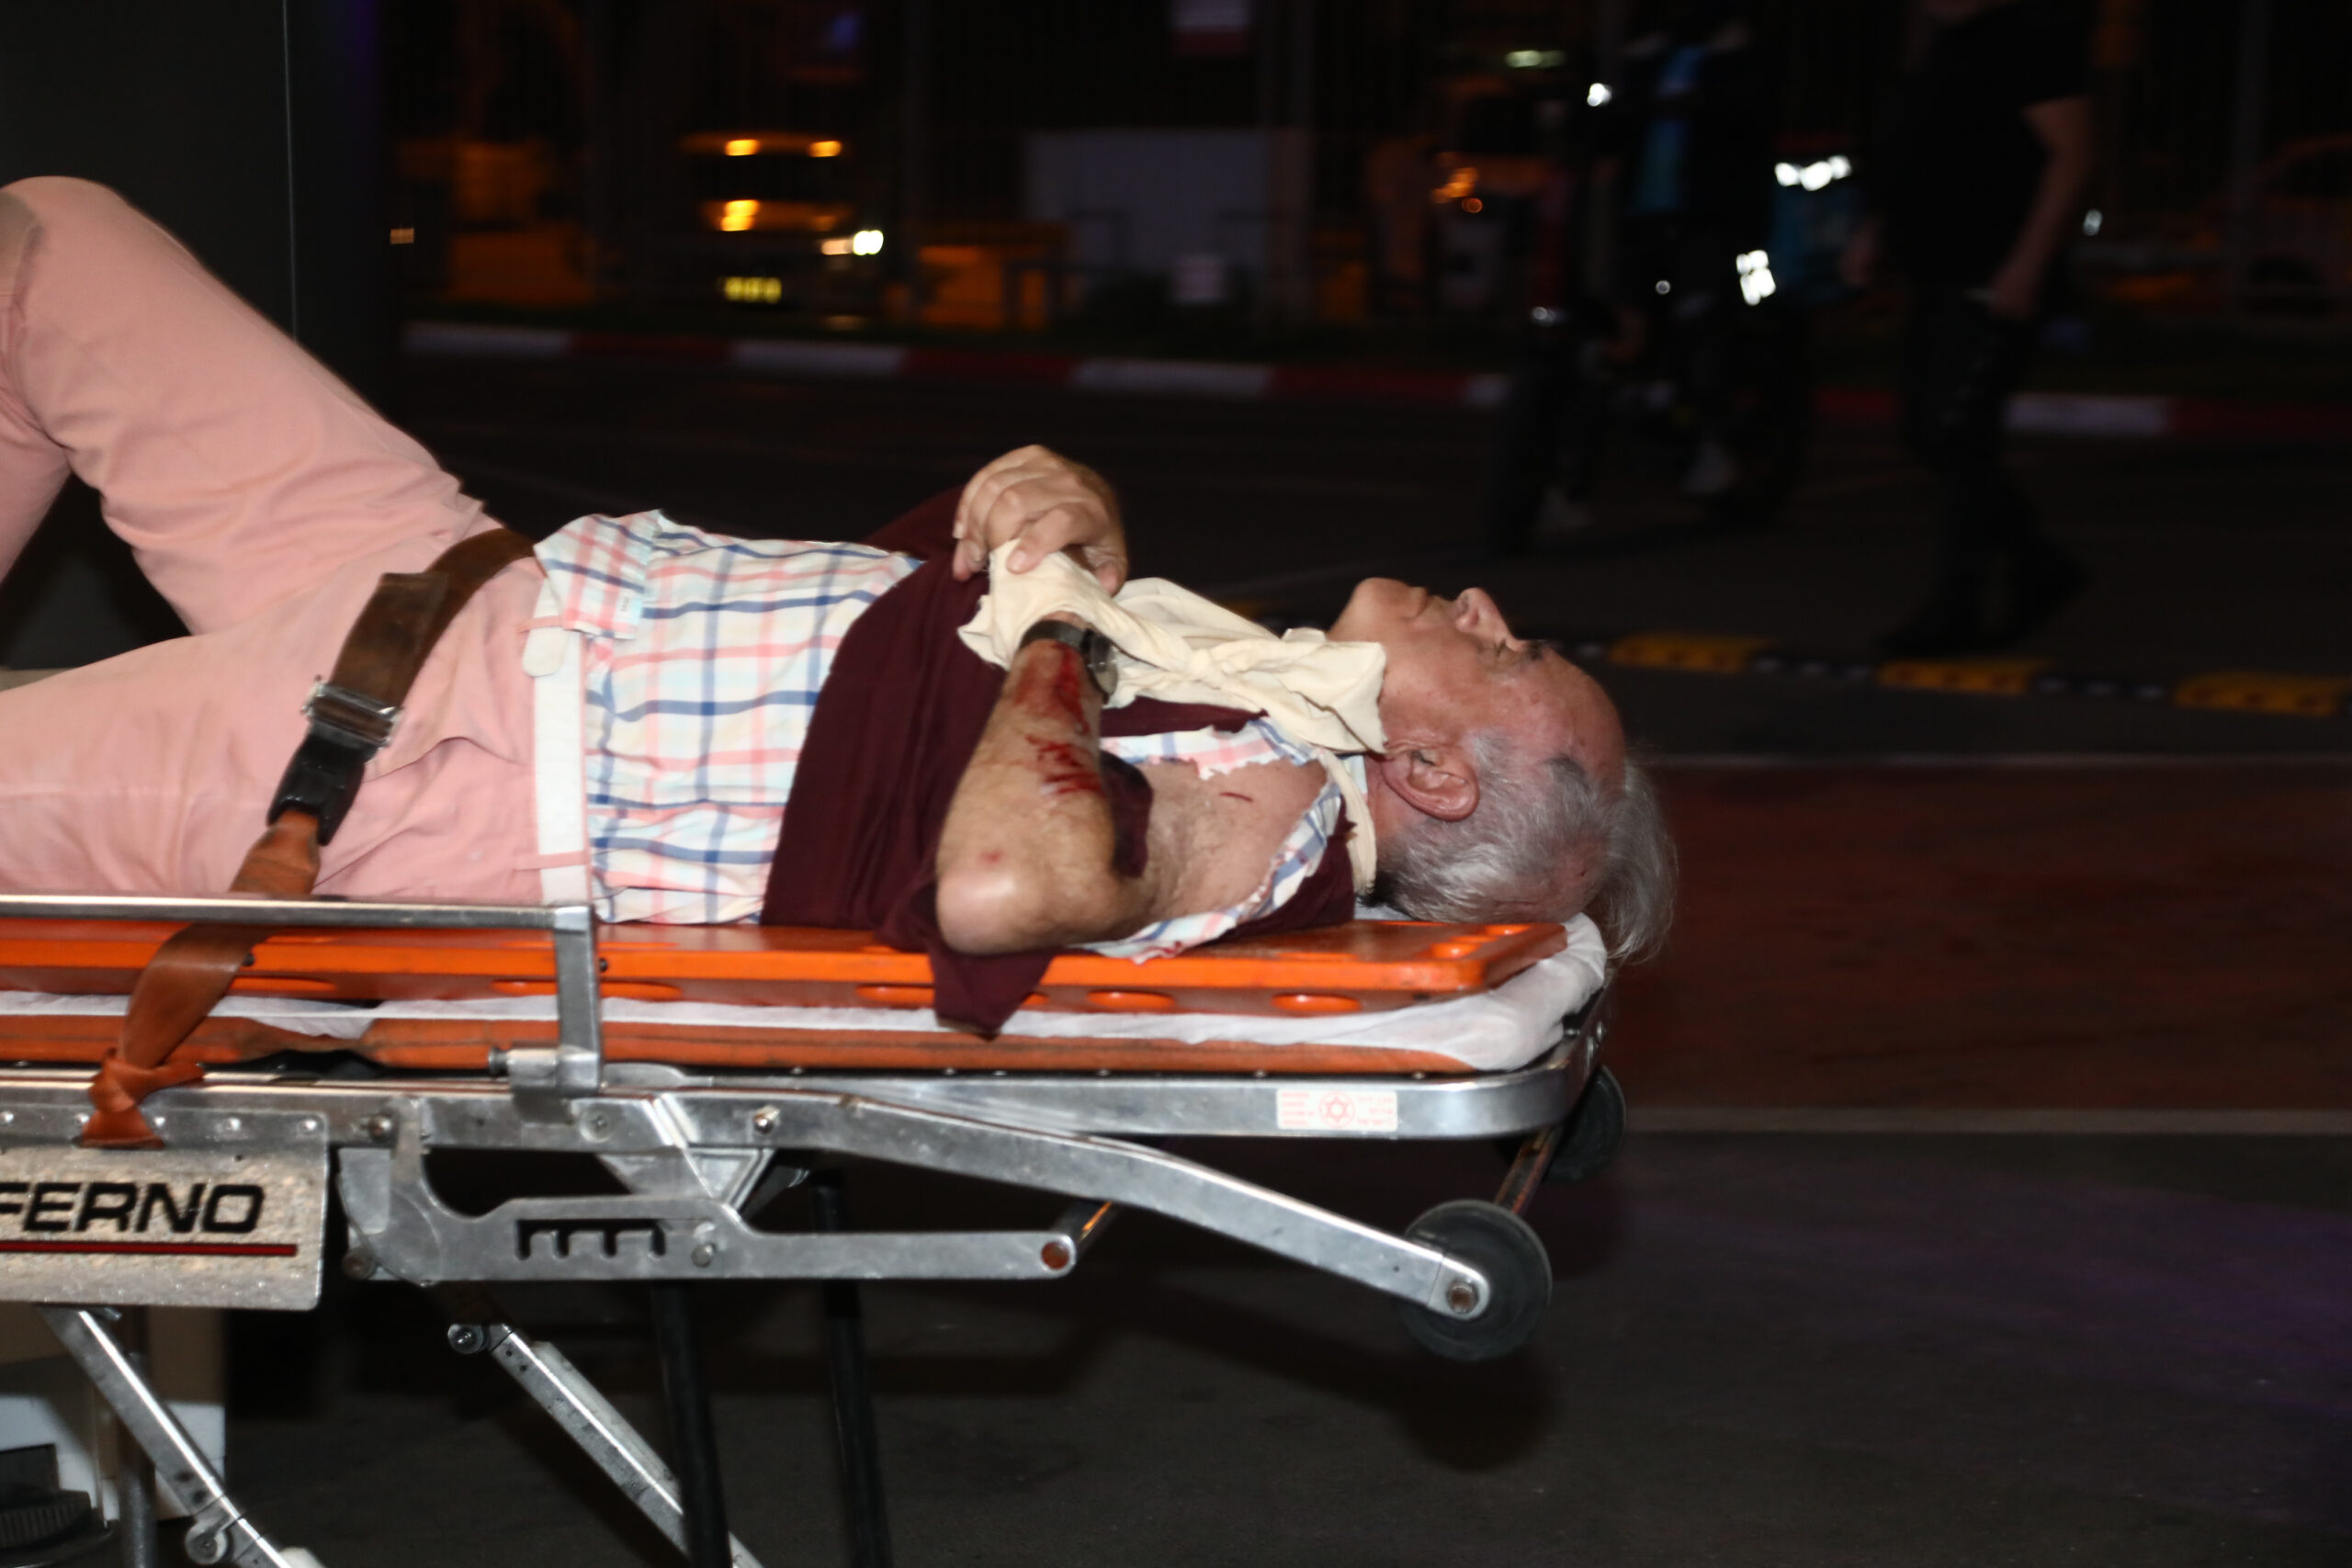 Мужчина, пострадавший в результате перестрелки и наезда, эвакуируется в медицинский центр в Тель-Авиве. Фото Gideon Markowicz / JINI via Xinhua / AFP / Scanpix / LETA.